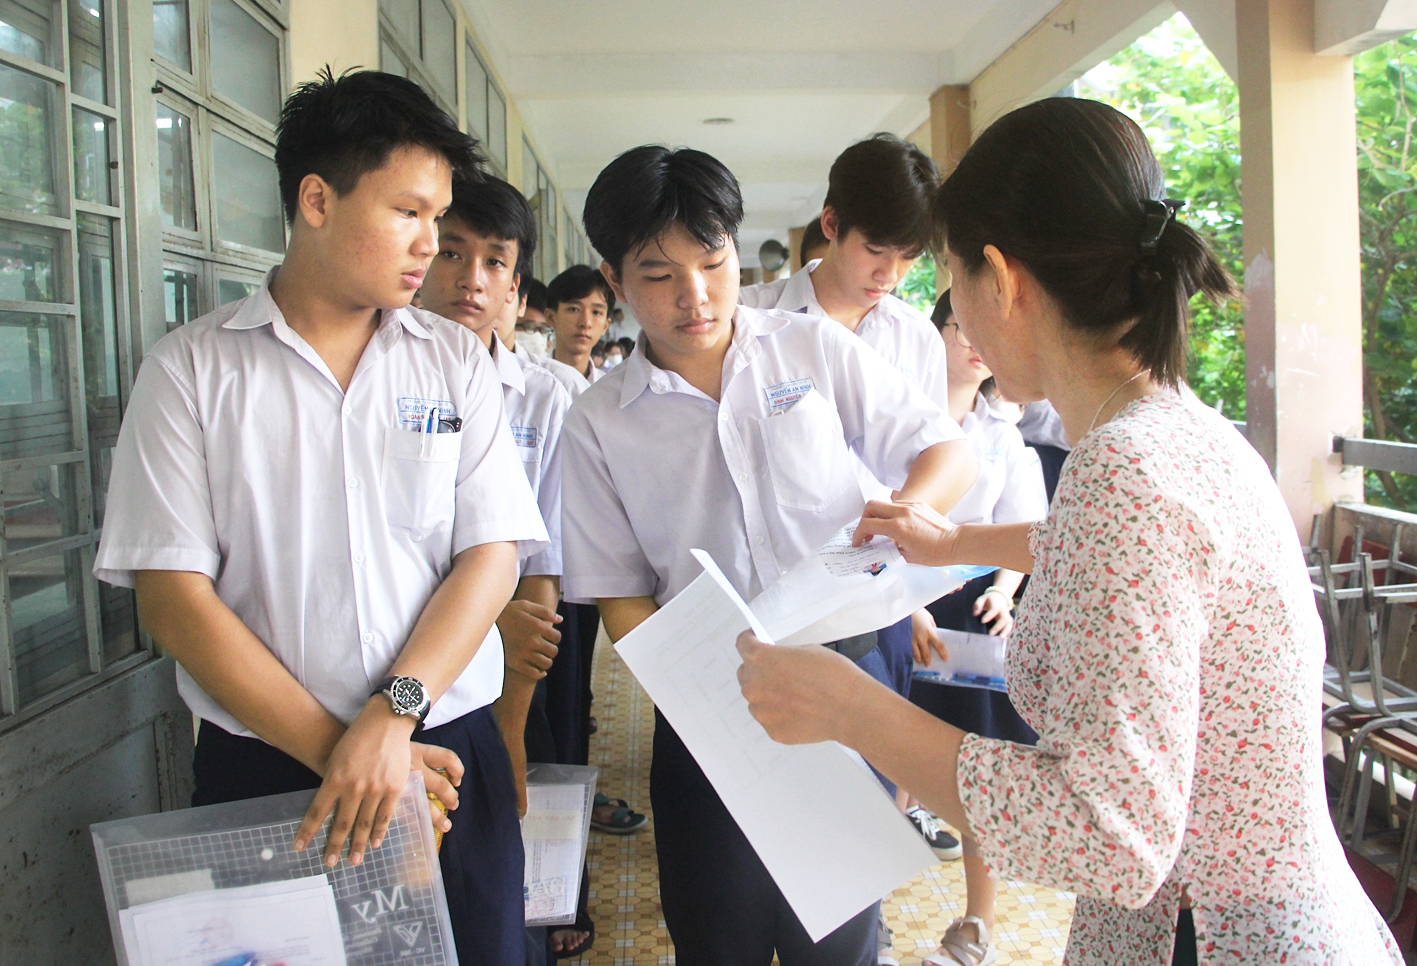 TP Hồ Chí Minh đưa tình yêu biển đảo, quê hương vào đề thi Văn lớp 10